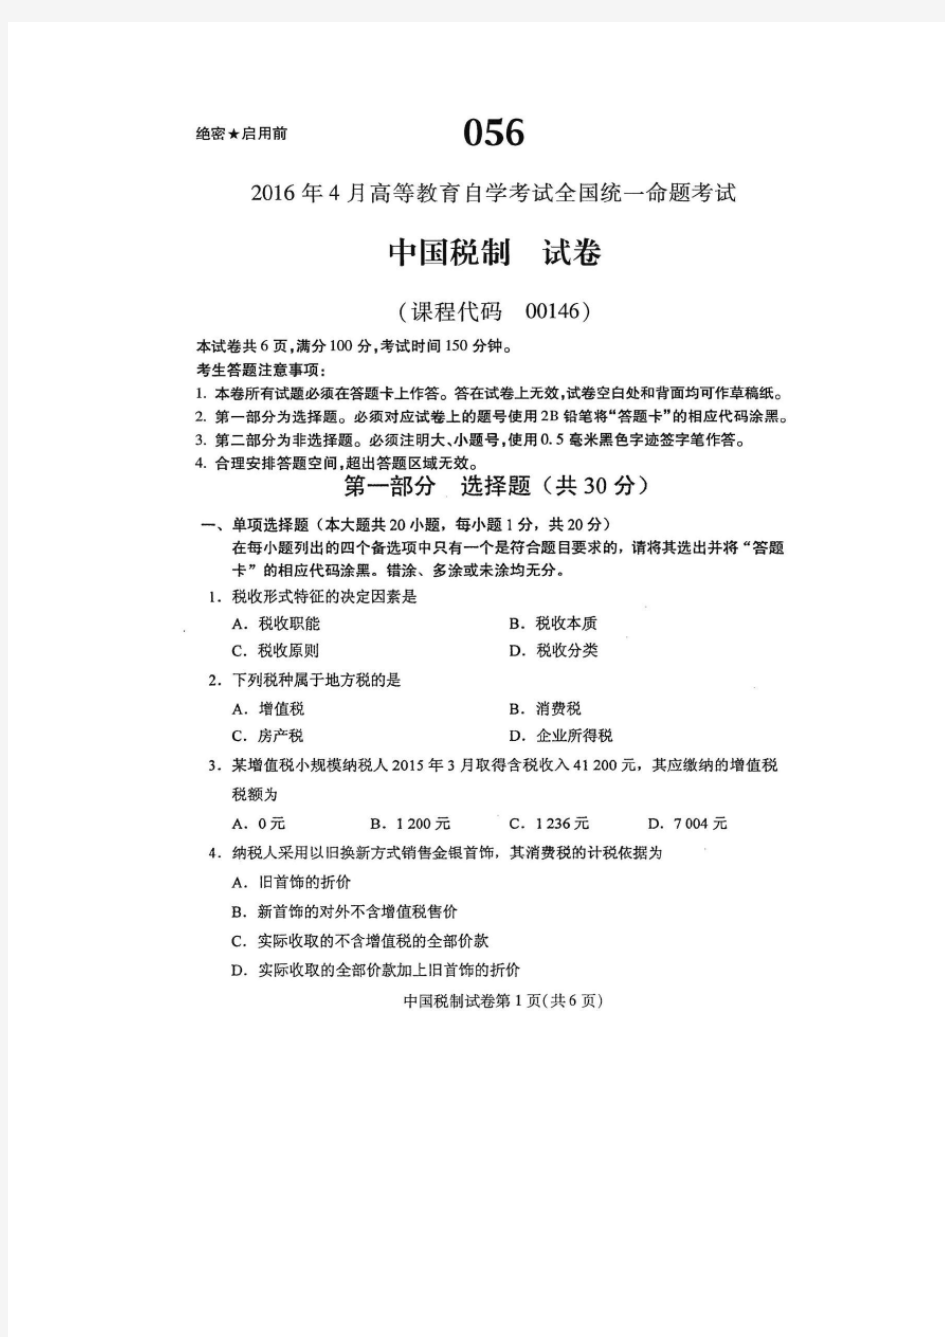 2016年4月自学考试中国税制00146试卷及答案解释完整版